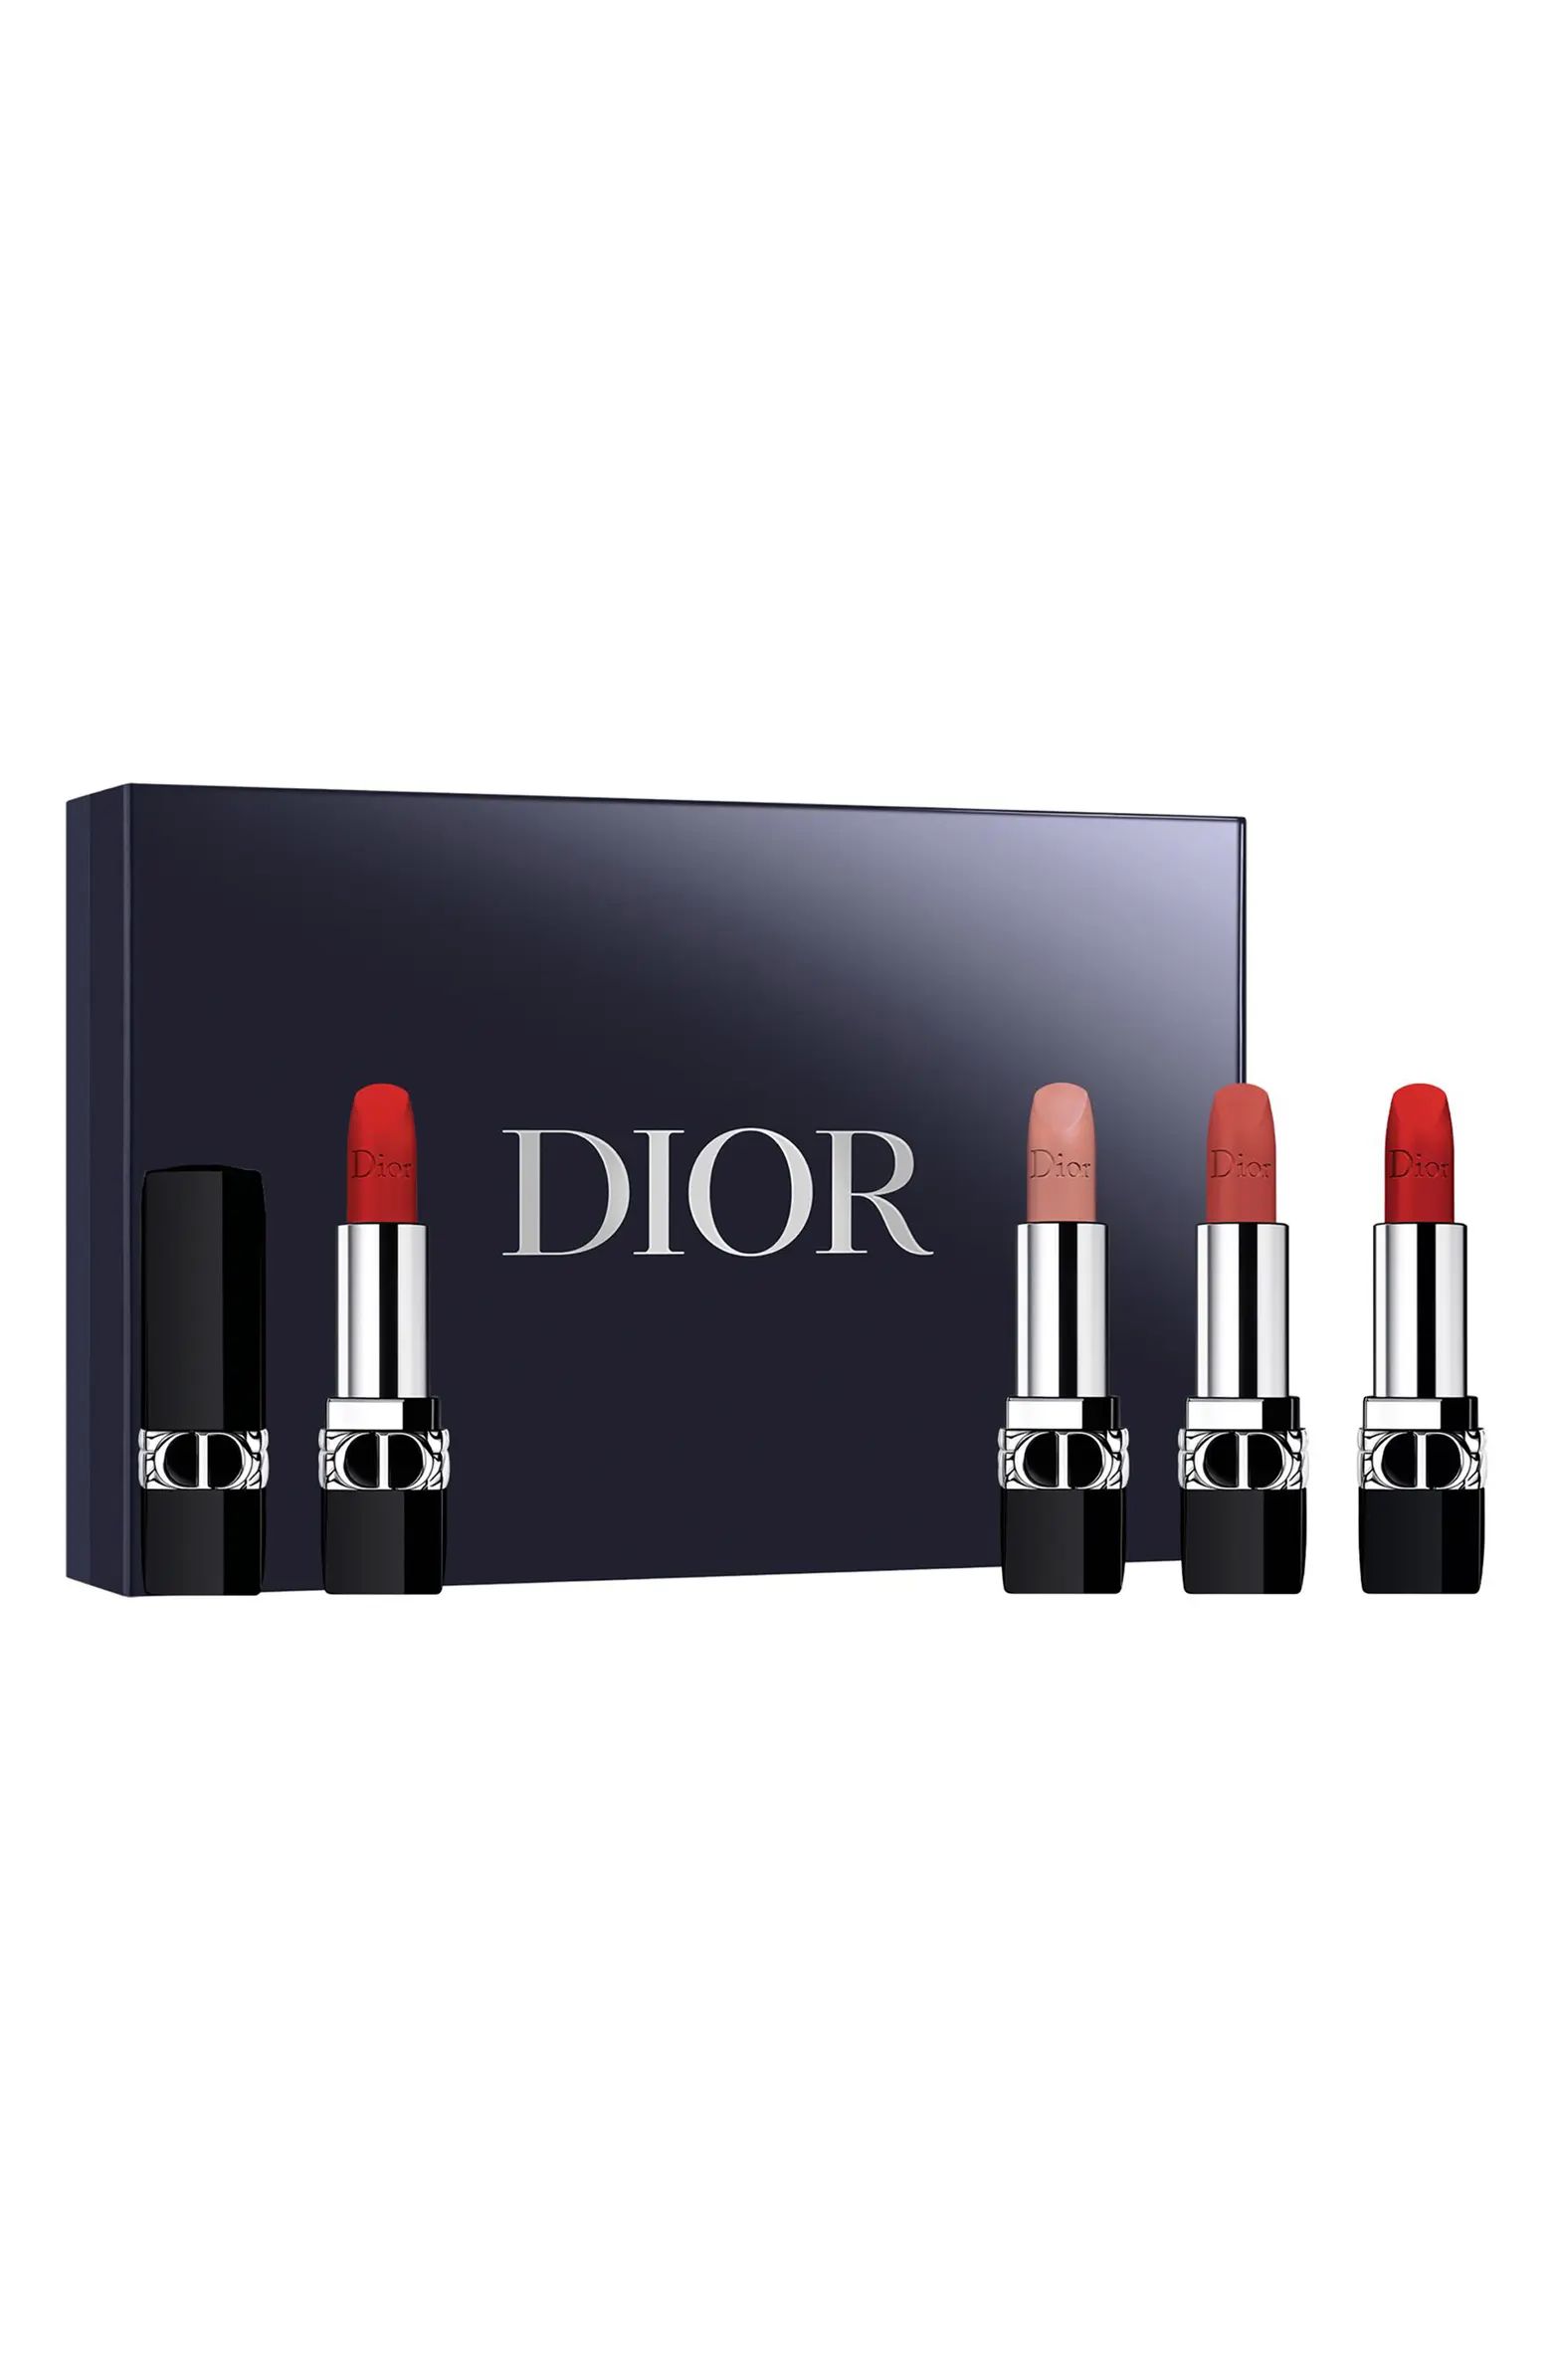 Rouge Dior Lipstick Set $77 Value | Nordstrom